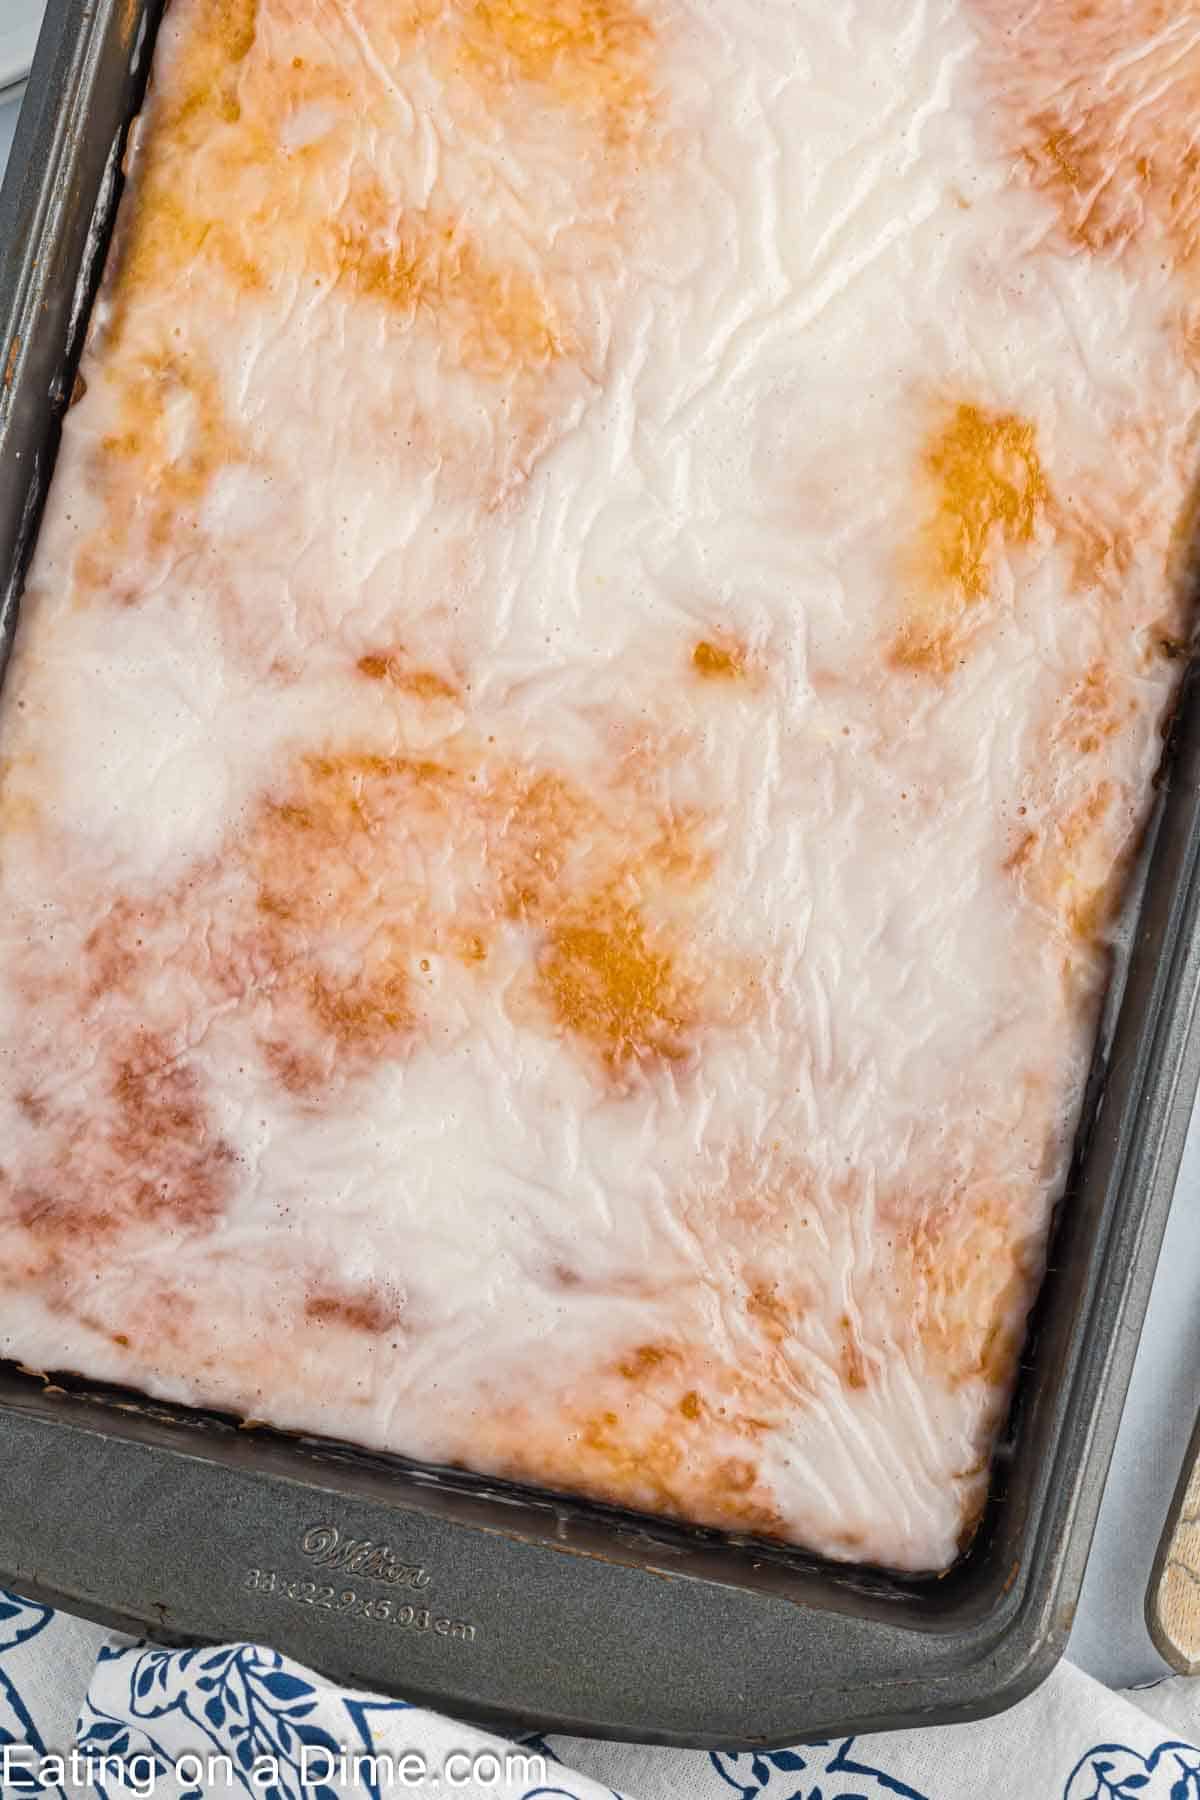 Honey bun cake in a baking dish